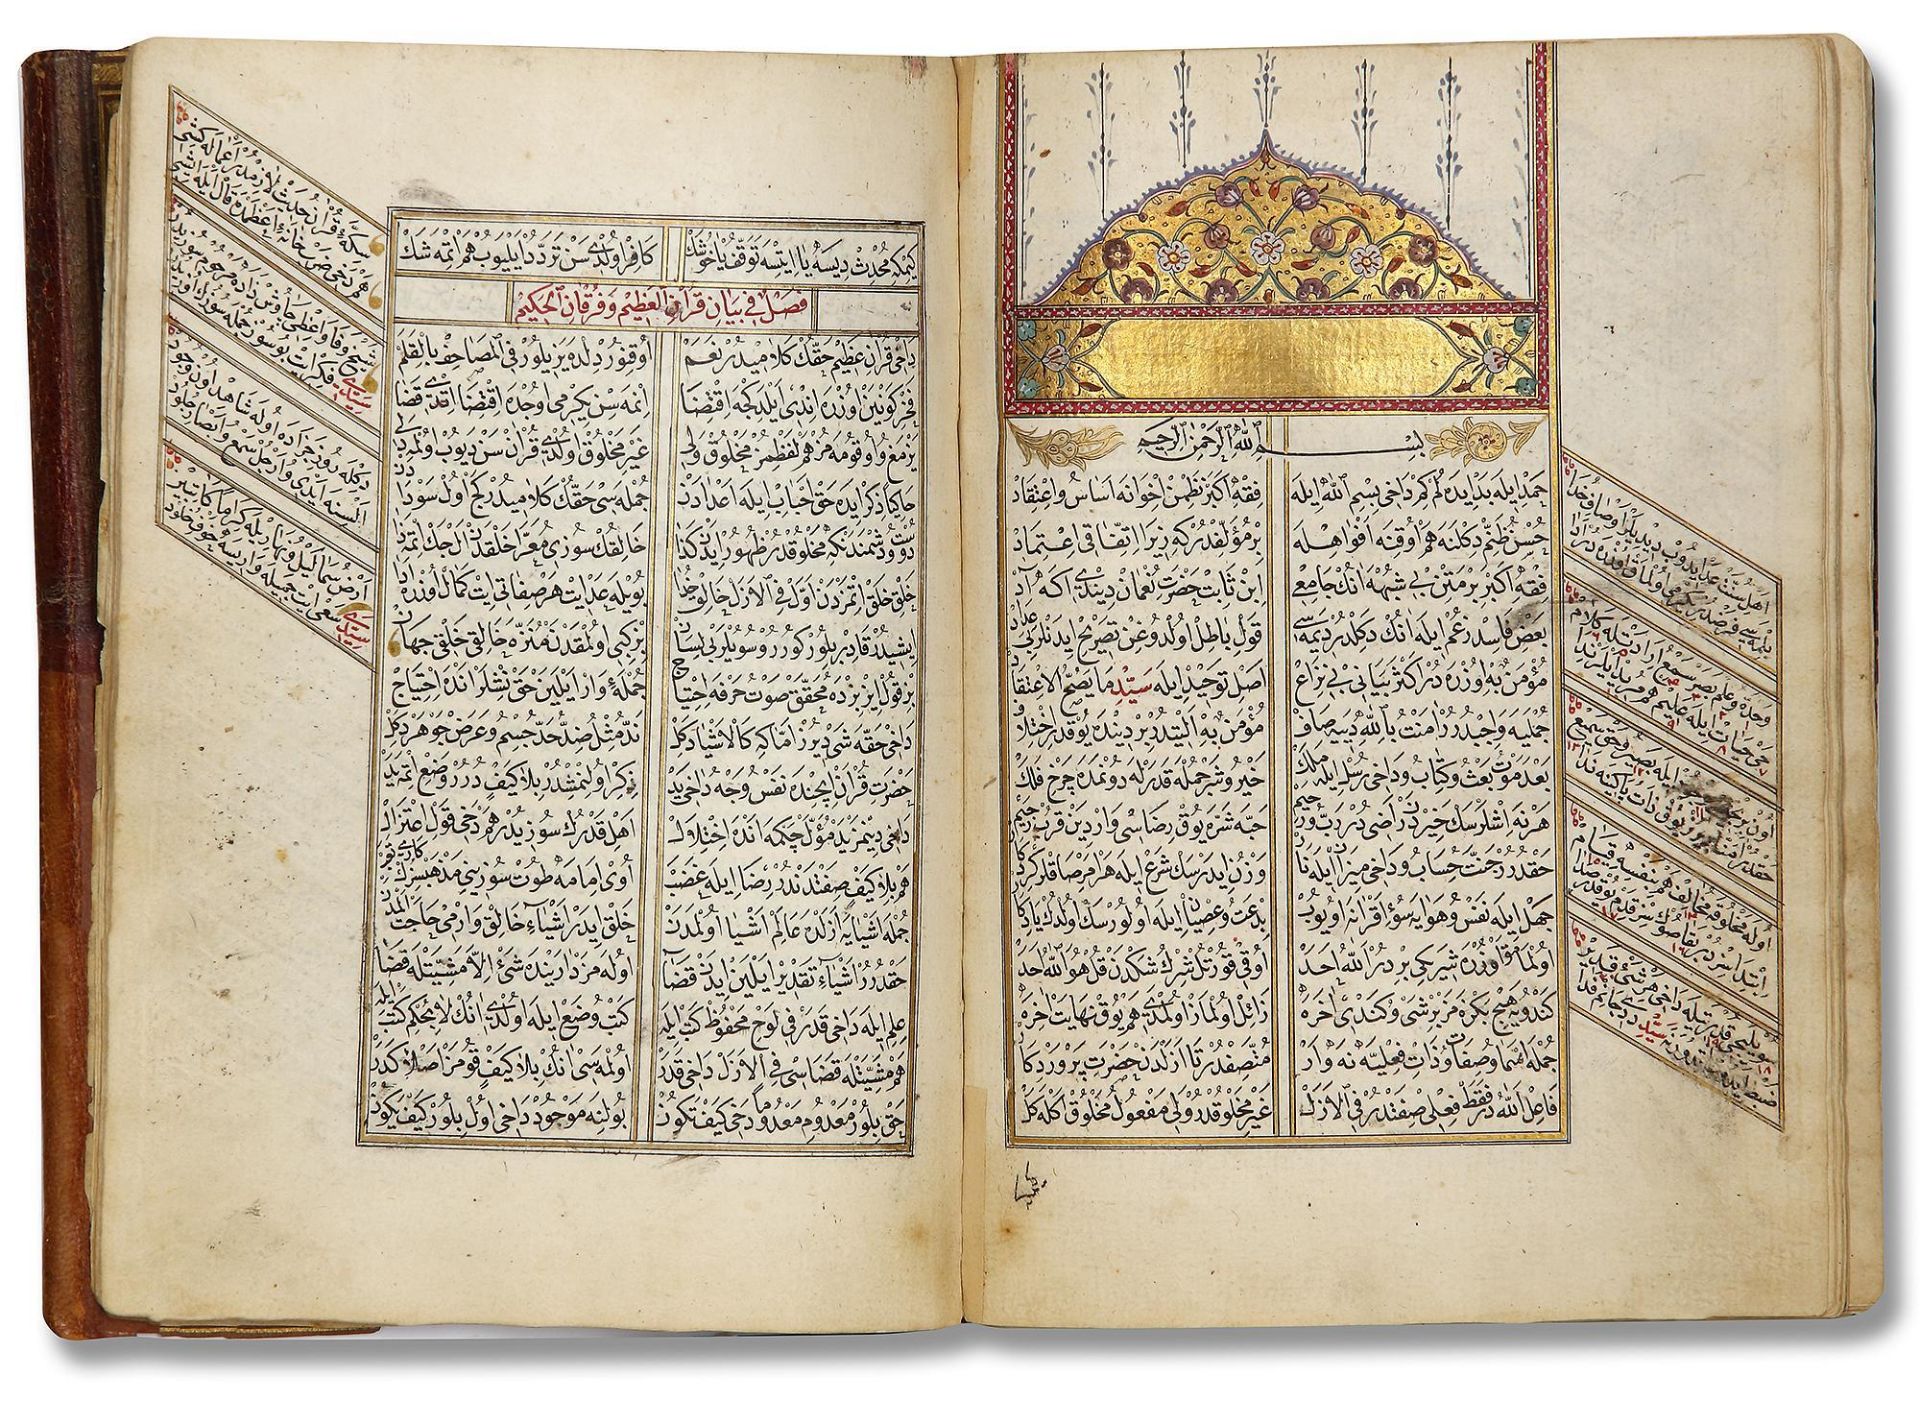 AN OTTOMAN MANUSCRIPT COPIED BY YUSUF IBN ABD AL-WAHHAB 1099 AH/1688 AD - Image 12 of 16